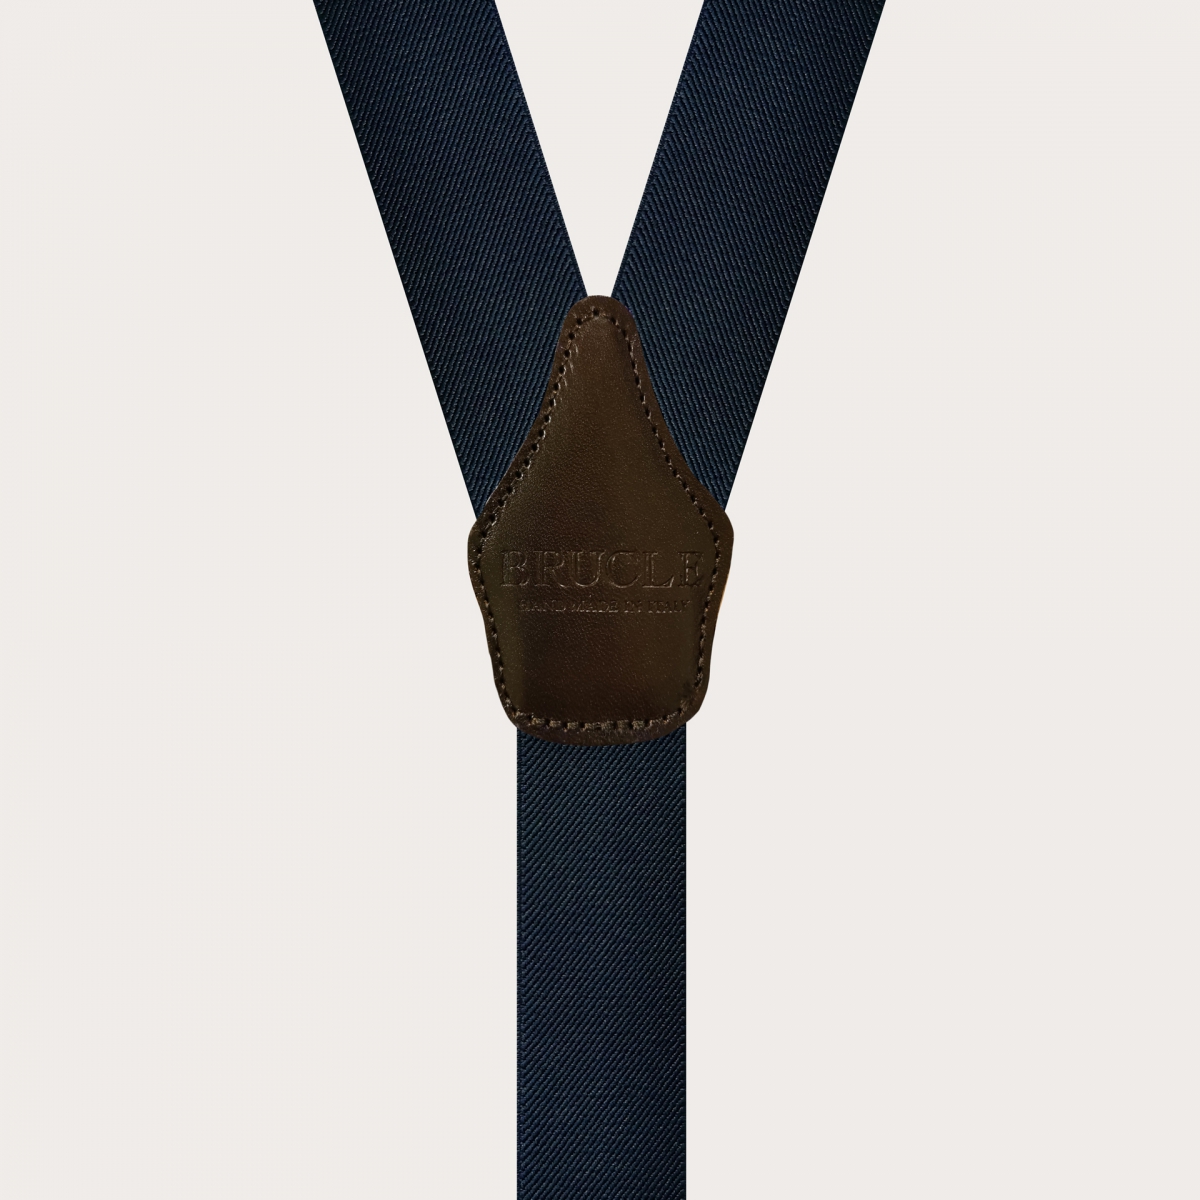 Blue Silk Men's Suspenders BRUCLE